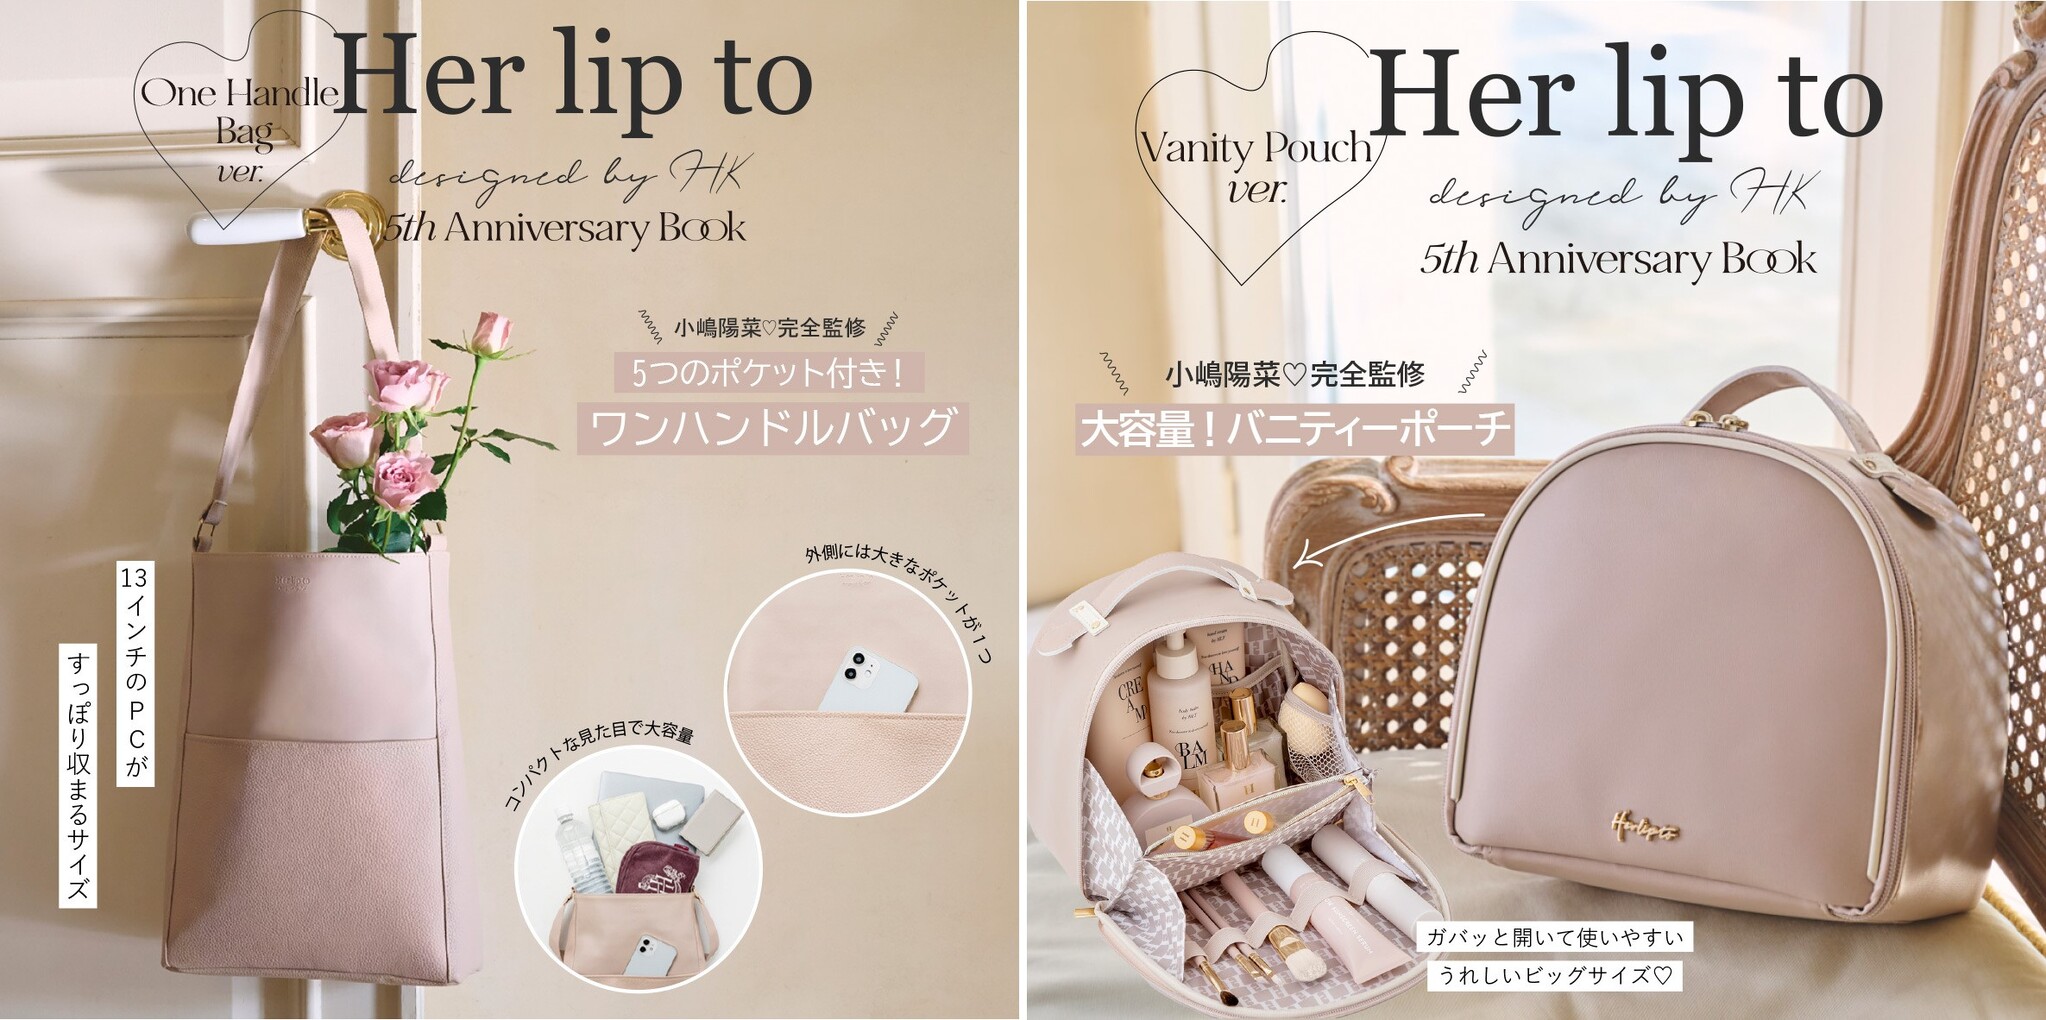 小嶋陽菜プロデュース「Her lip to」初の公式ブックが6/28発売